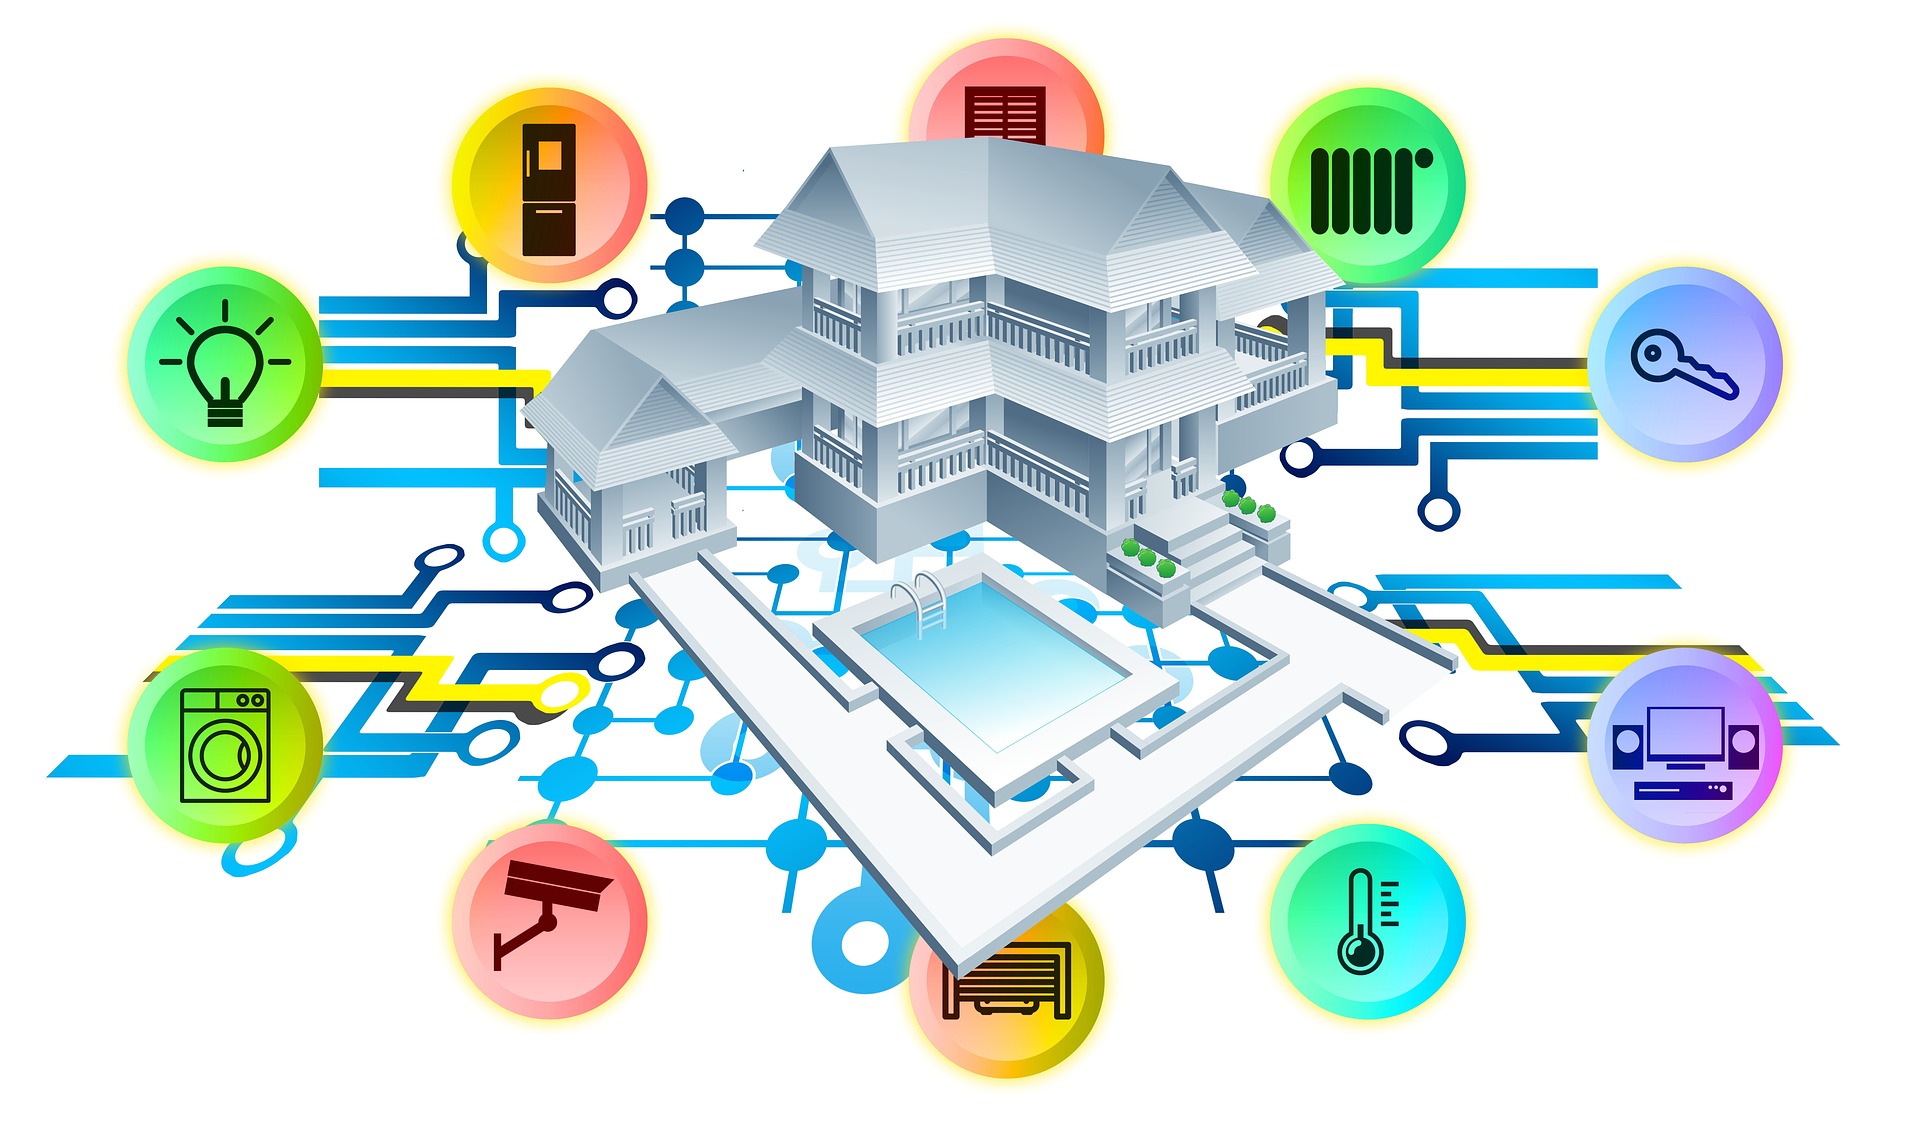 La imagen muestra una casa rodeada de los iconos de instalaciones y elementos controlados por un sistema de domótica que convierte a la vivienda en una Smart Home